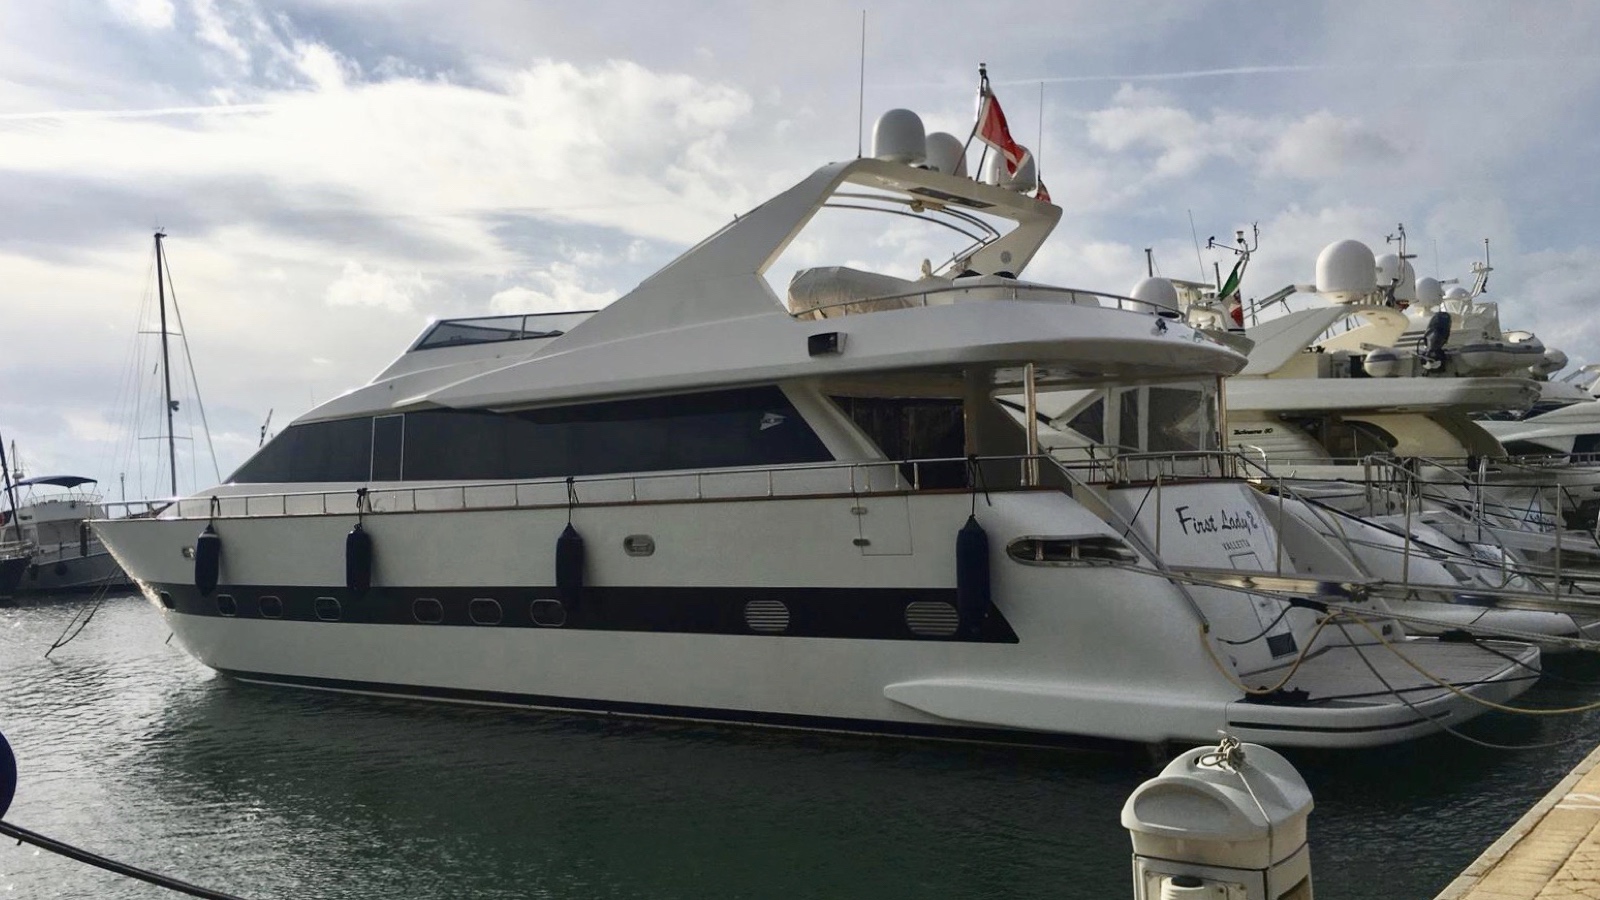 yacht first lady qatar olbia